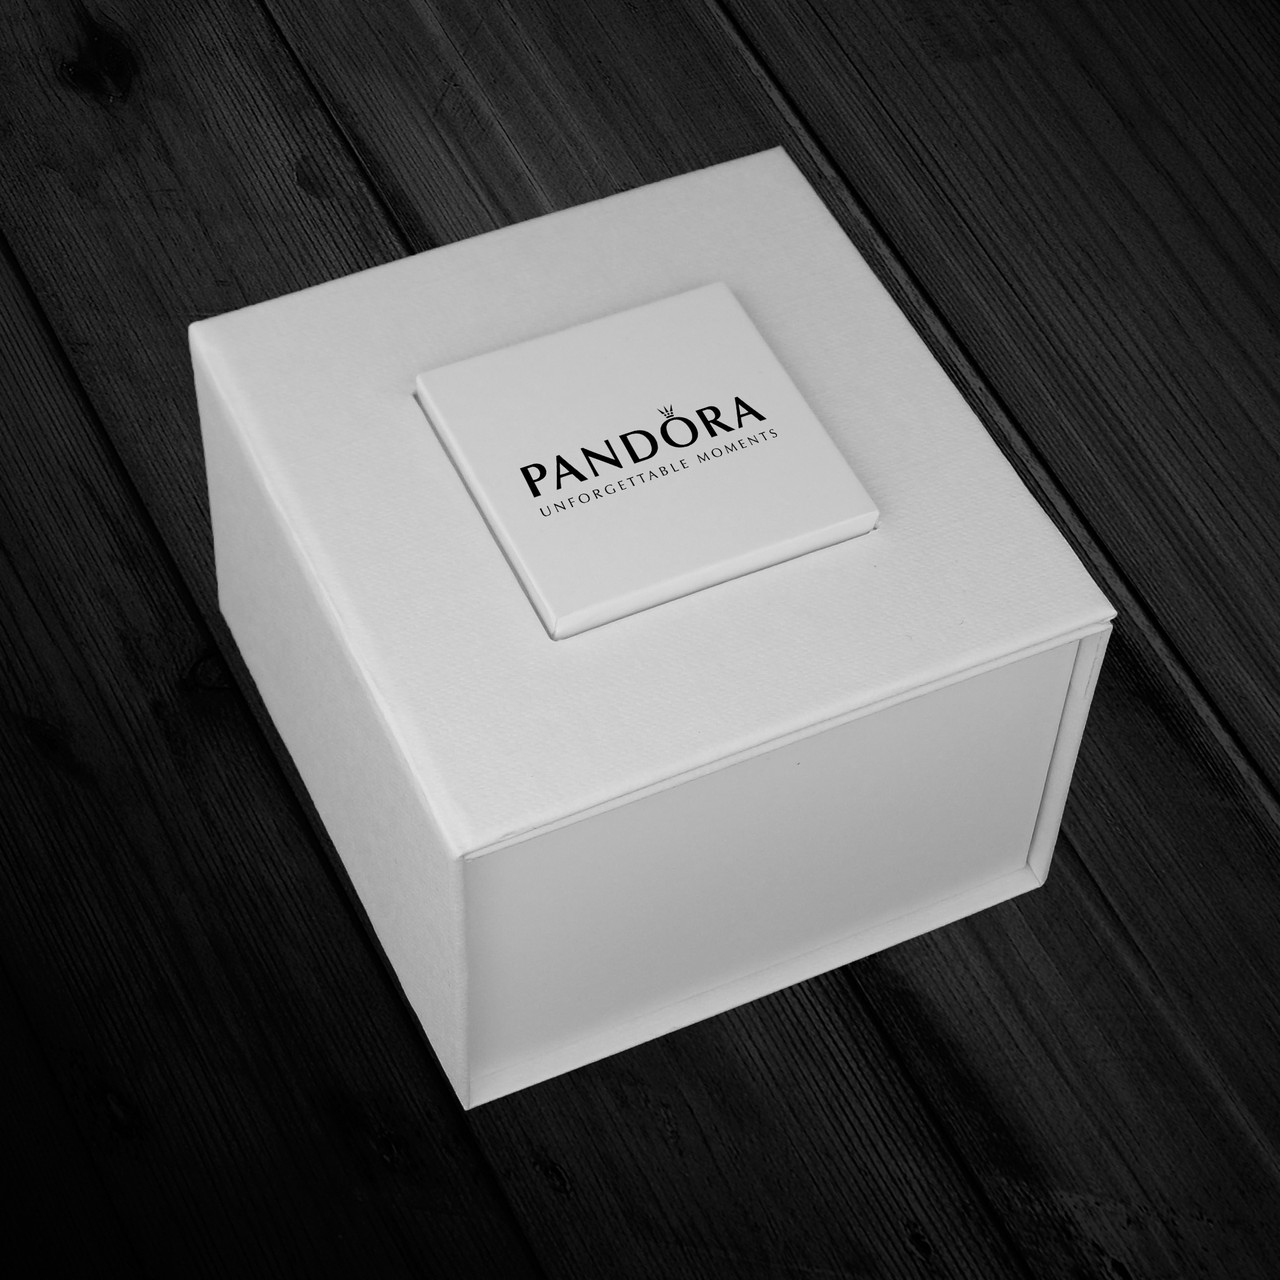 Біла коробочка Pandora для наручного годинника, подарункова коробка Pandora